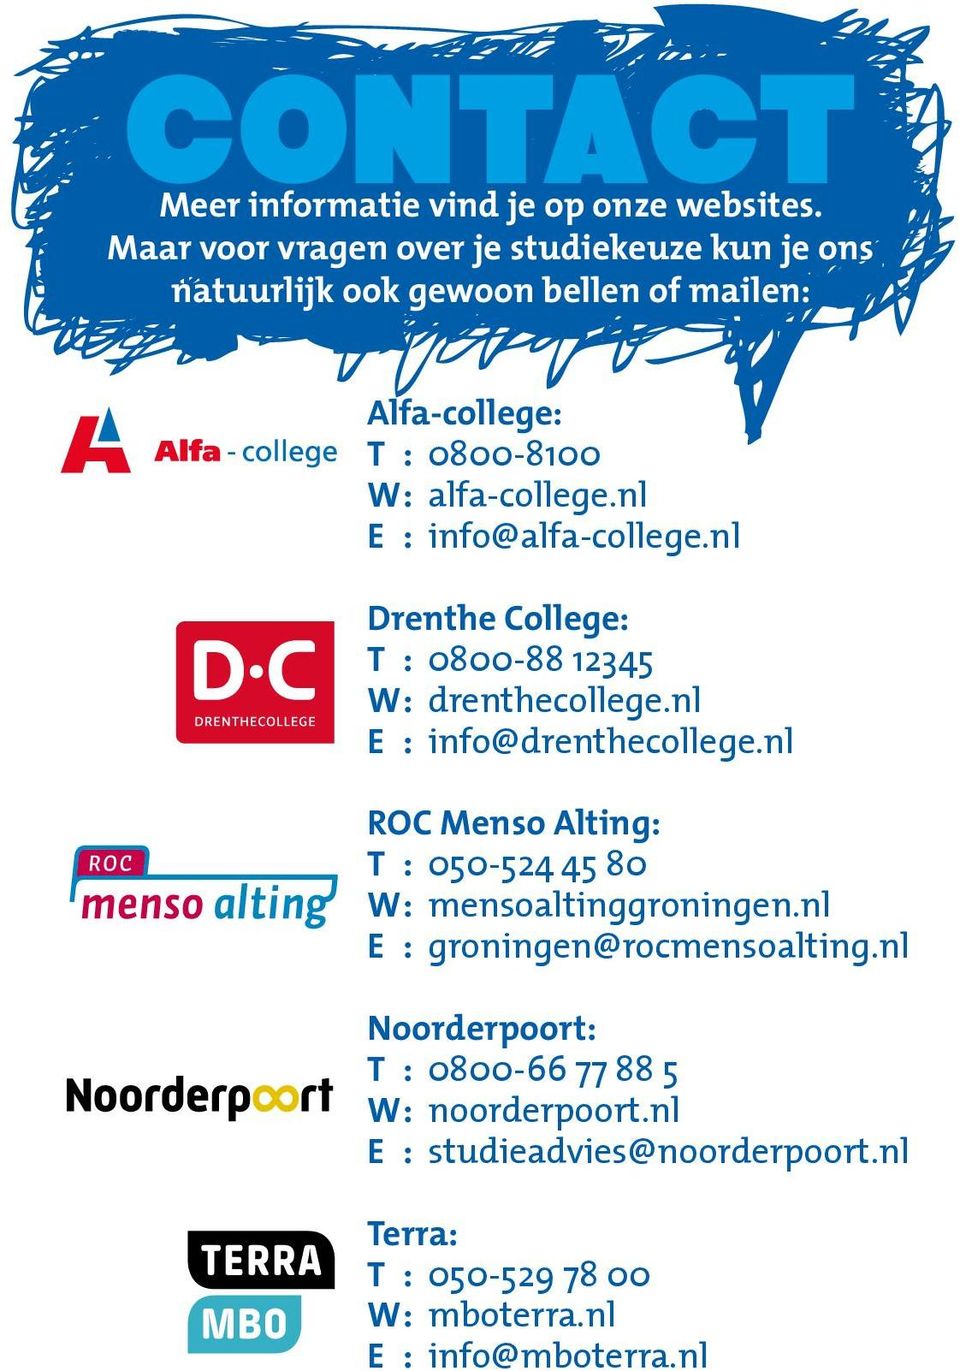 nl E : info@alfa-college.nl Drenthe College: T : 0800-88 12345 W : drenthecollege.nl E : info@drenthecollege.